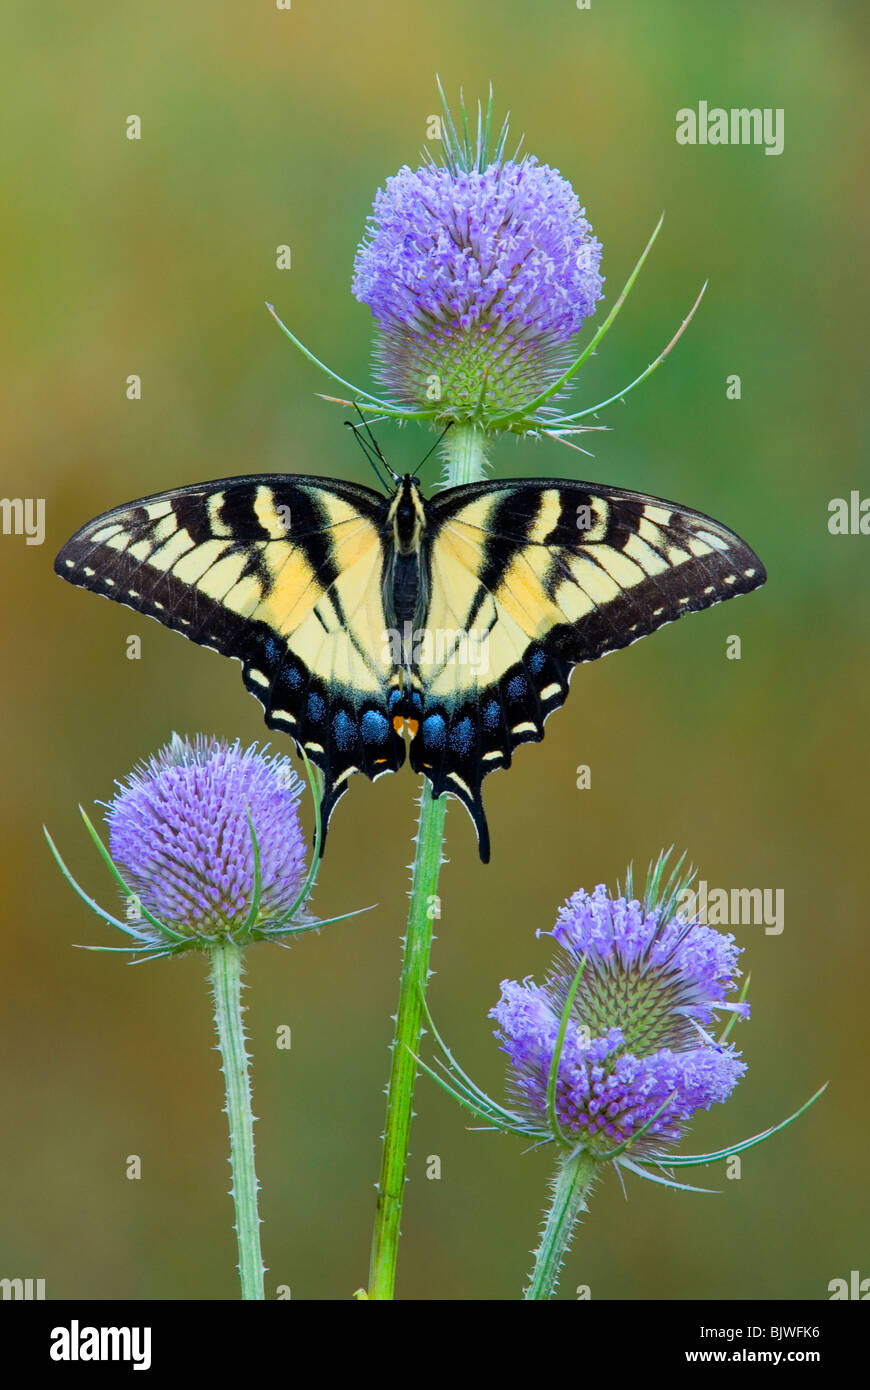 Orientale a coda di rondine di Tiger Butterfly Papilio glaucus su Teasel USA orientale, da saltare Moody/Dembinsky Foto Assoc Foto Stock